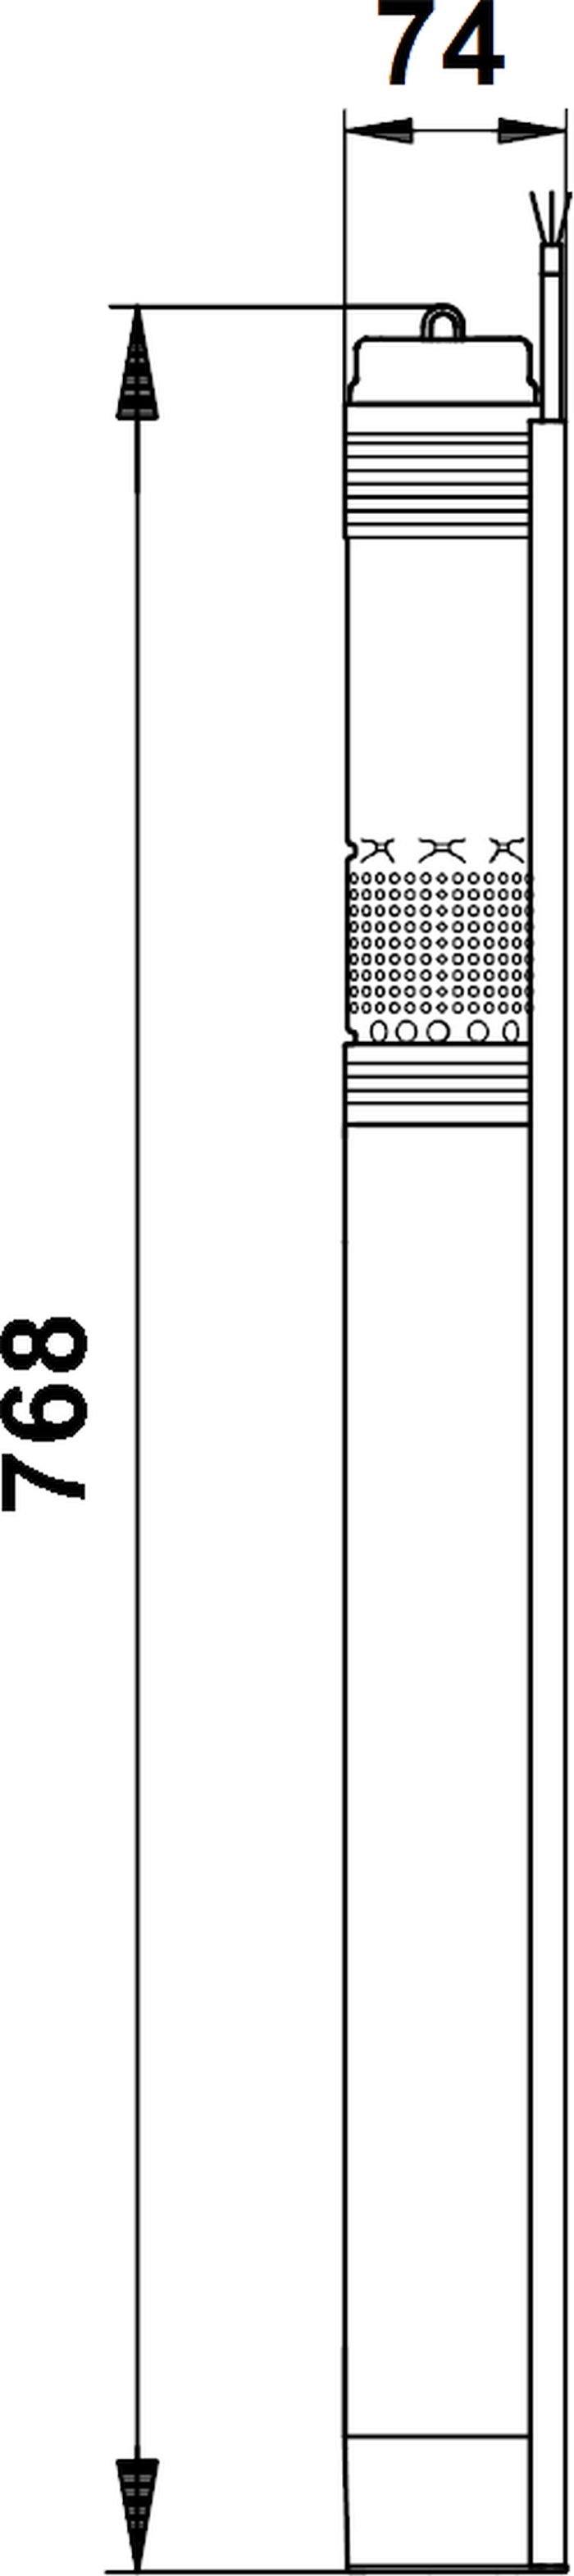 Grundfos SQ 2-70 (96510200) Габаритные размеры